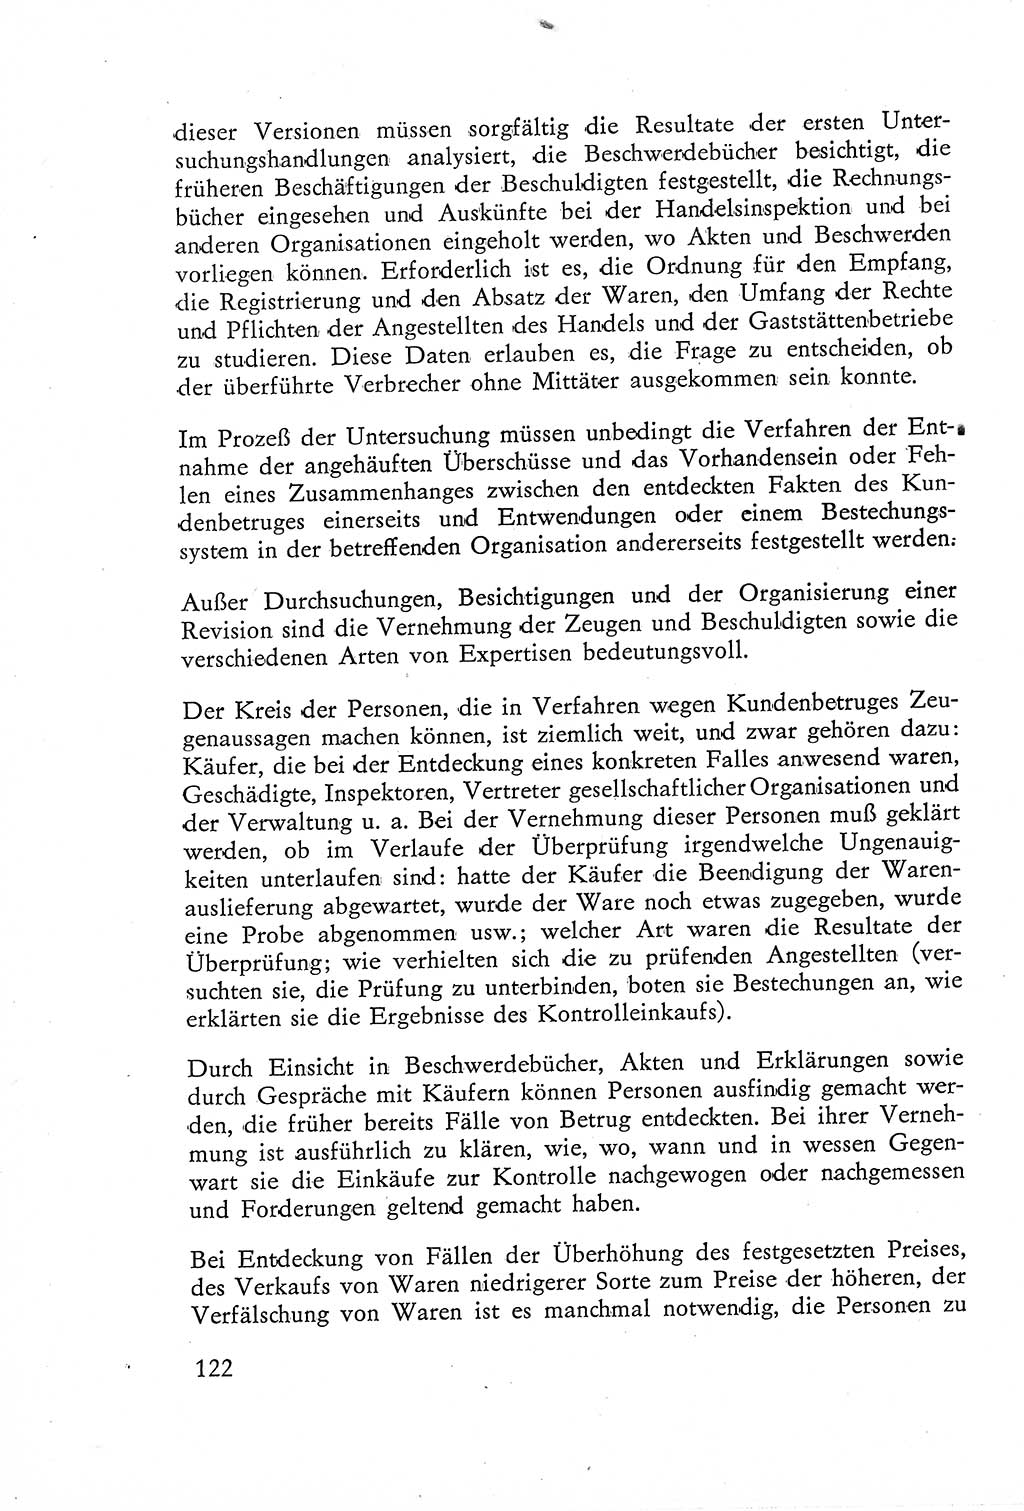 Die Untersuchung einzelner Verbrechensarten [Deutsche Demokratische Republik (DDR)] 1960, Seite 122 (Unters. Verbr.-Art. DDR 1960, S. 122)